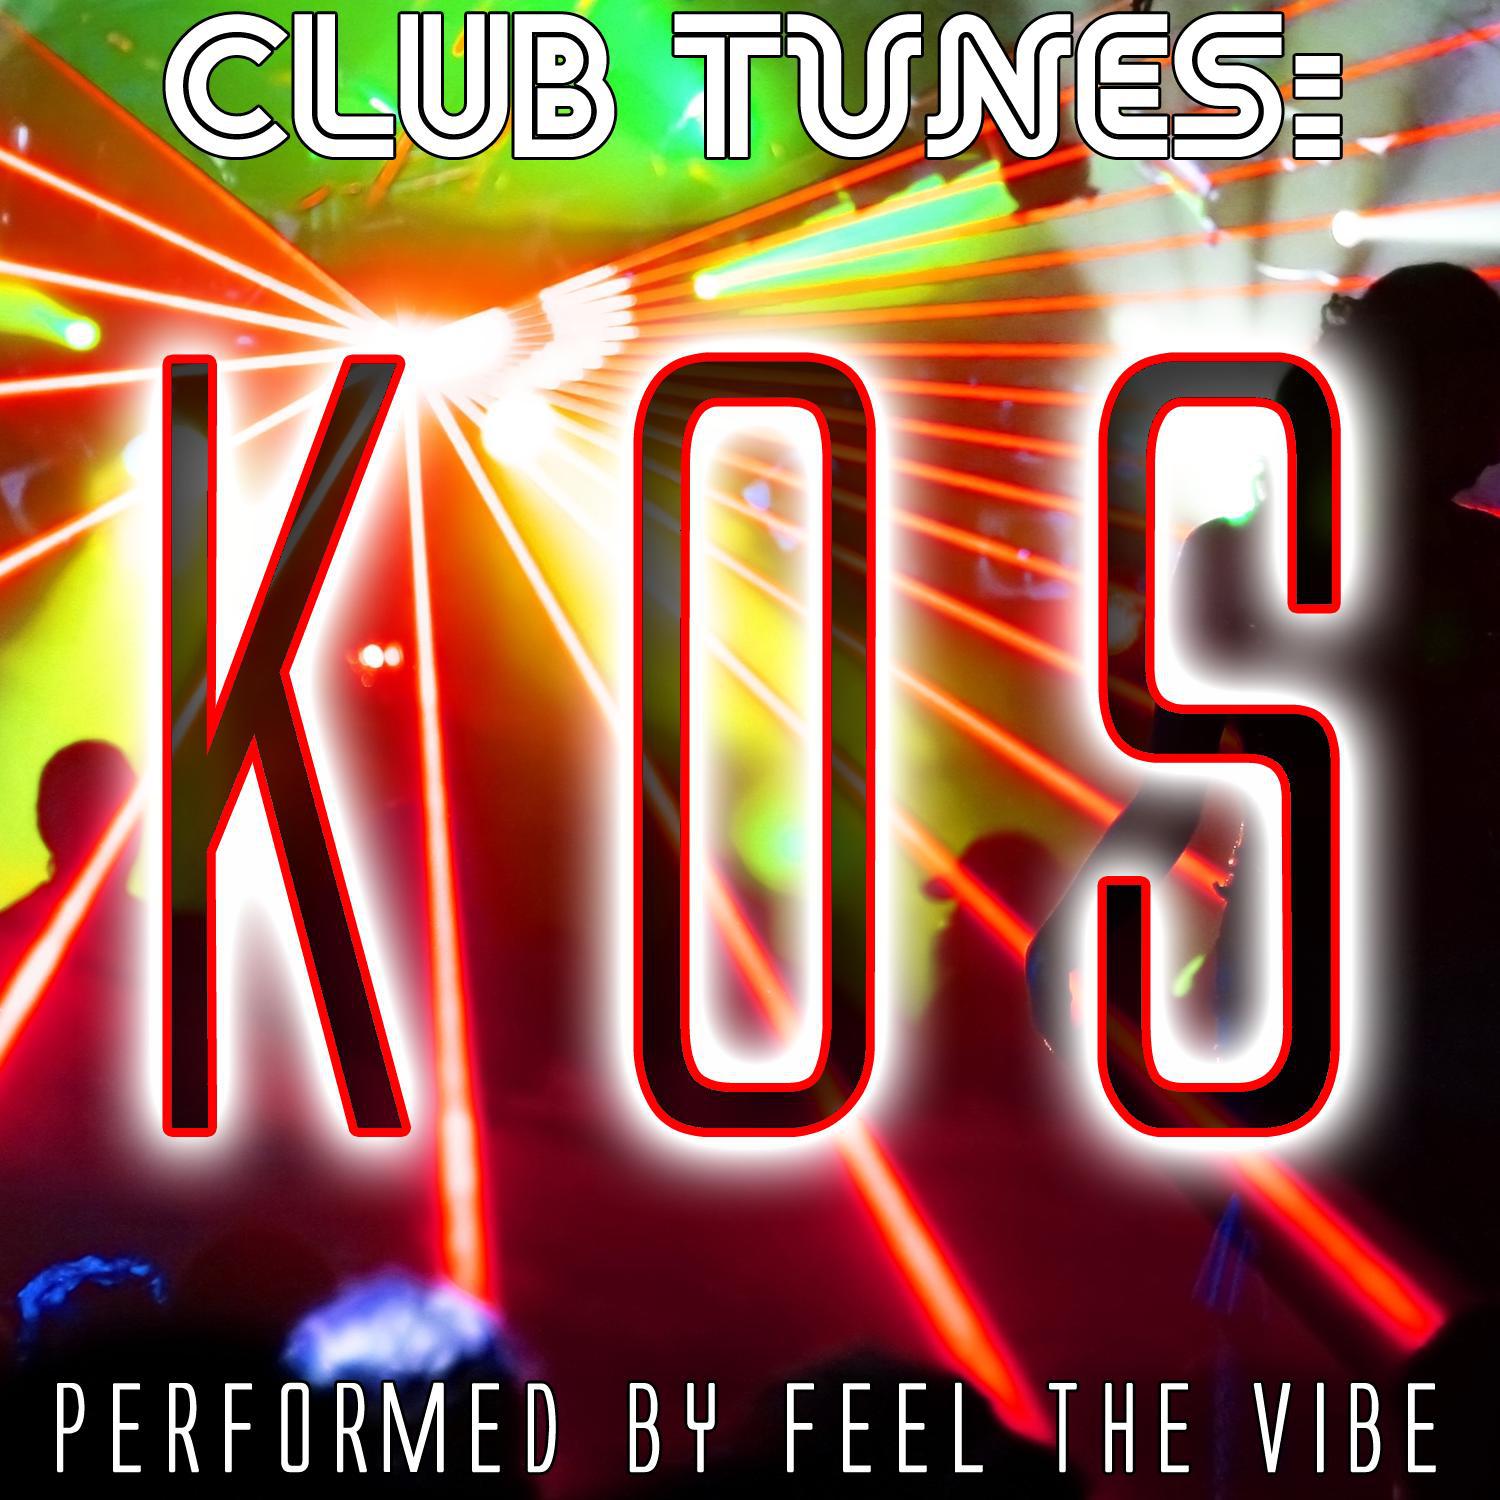 Club Tunes: Kos